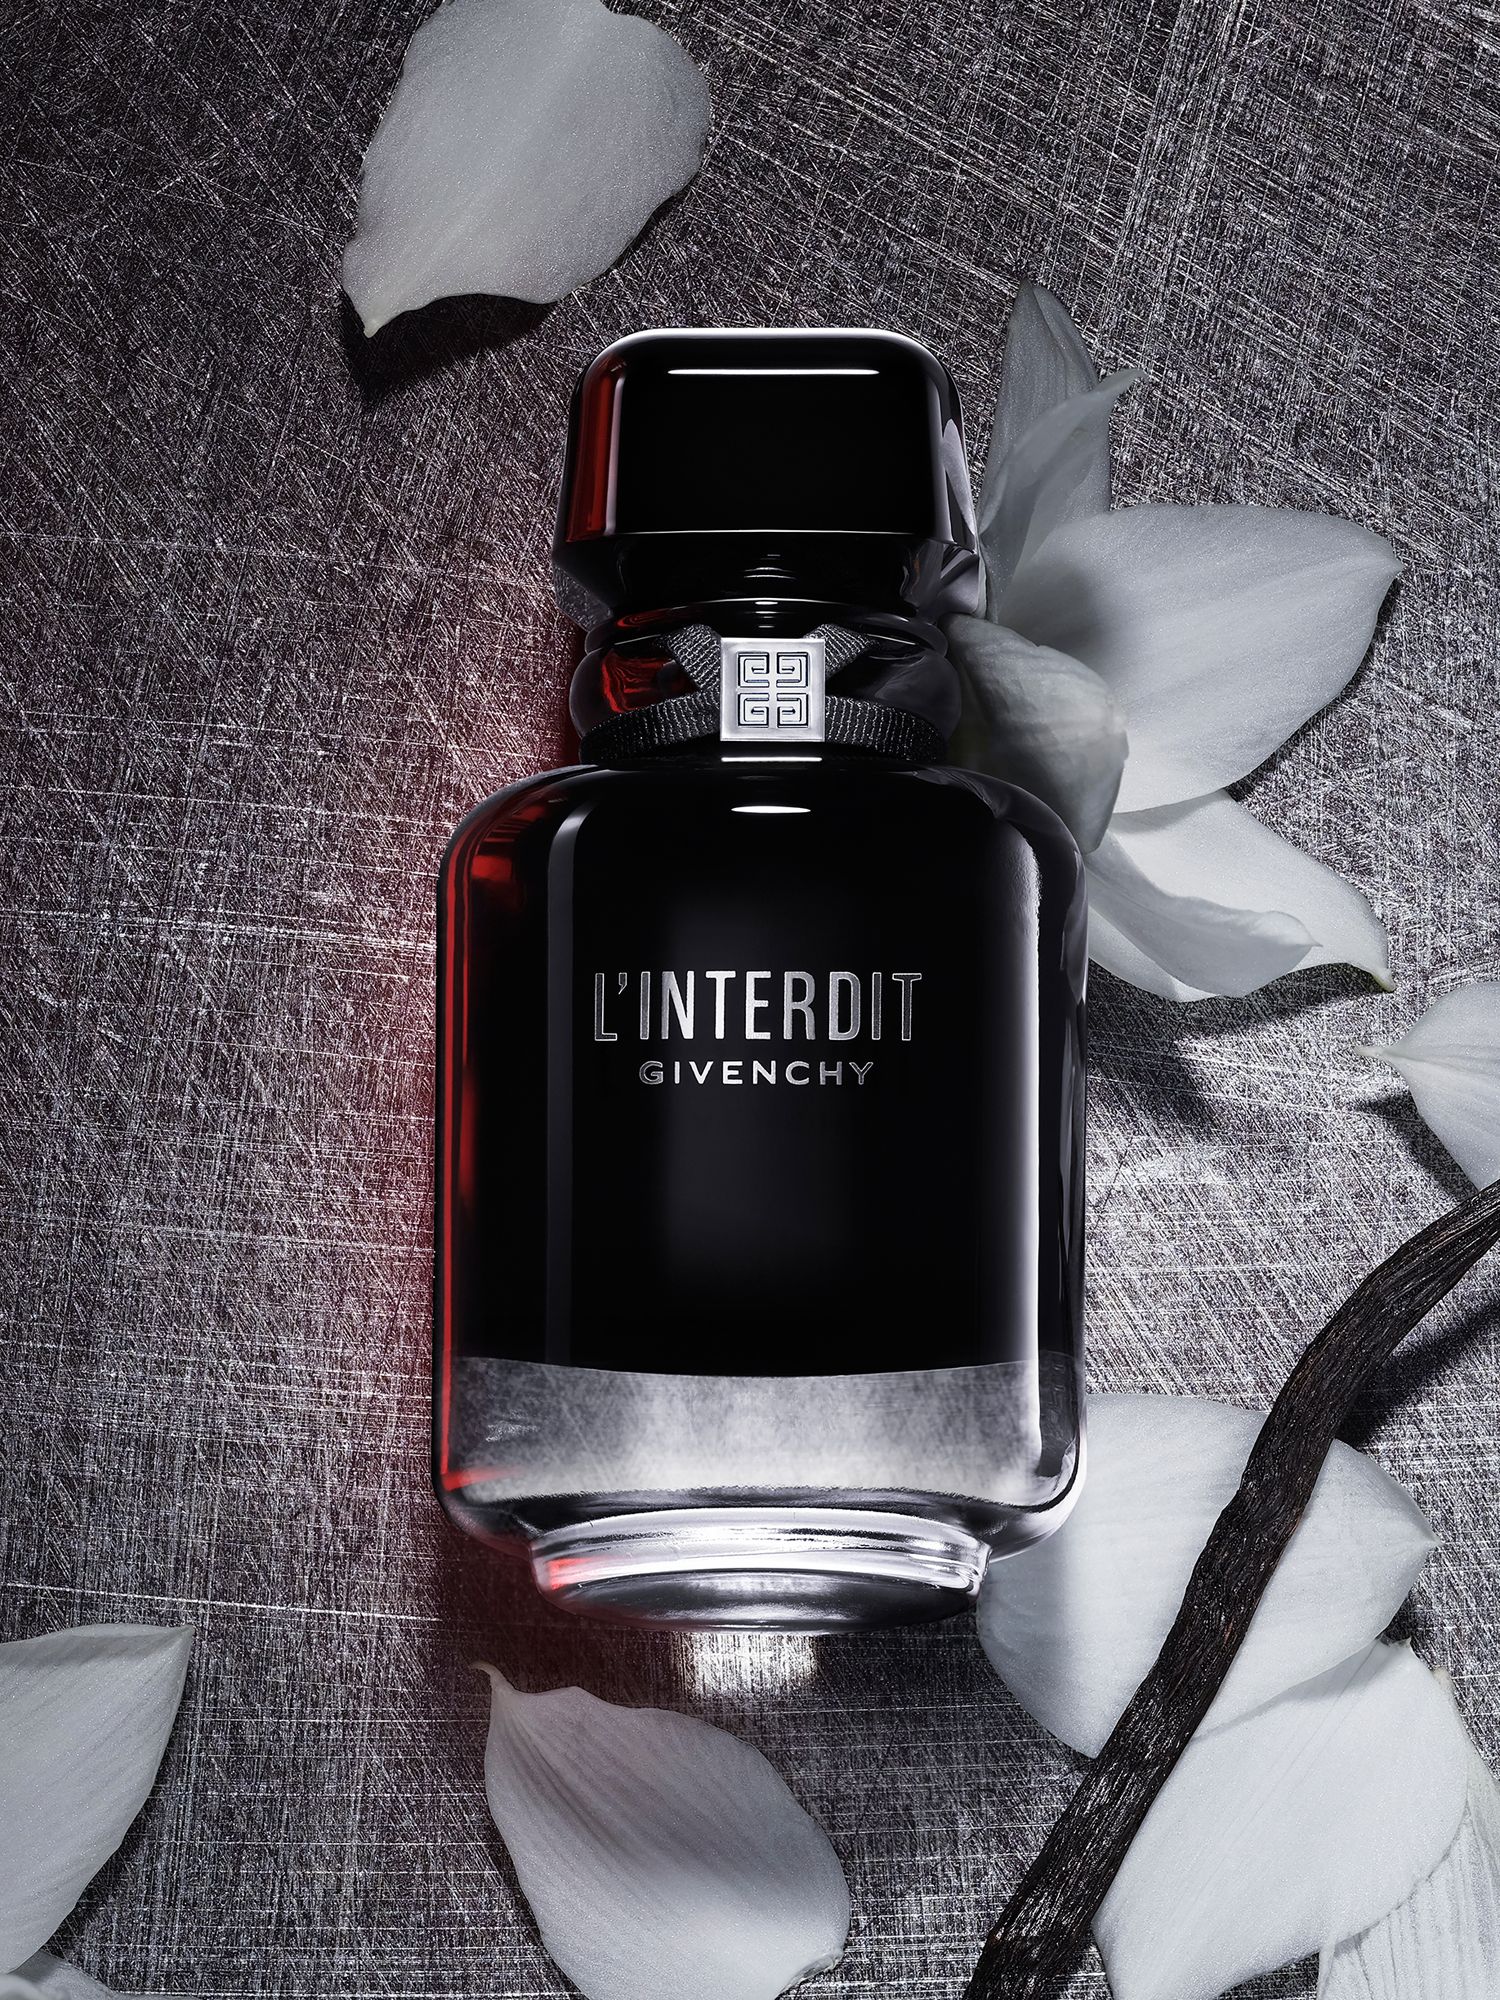 Givenchy L'Interdit Eau de Parfum Intense, 35ml at John Lewis & Partners